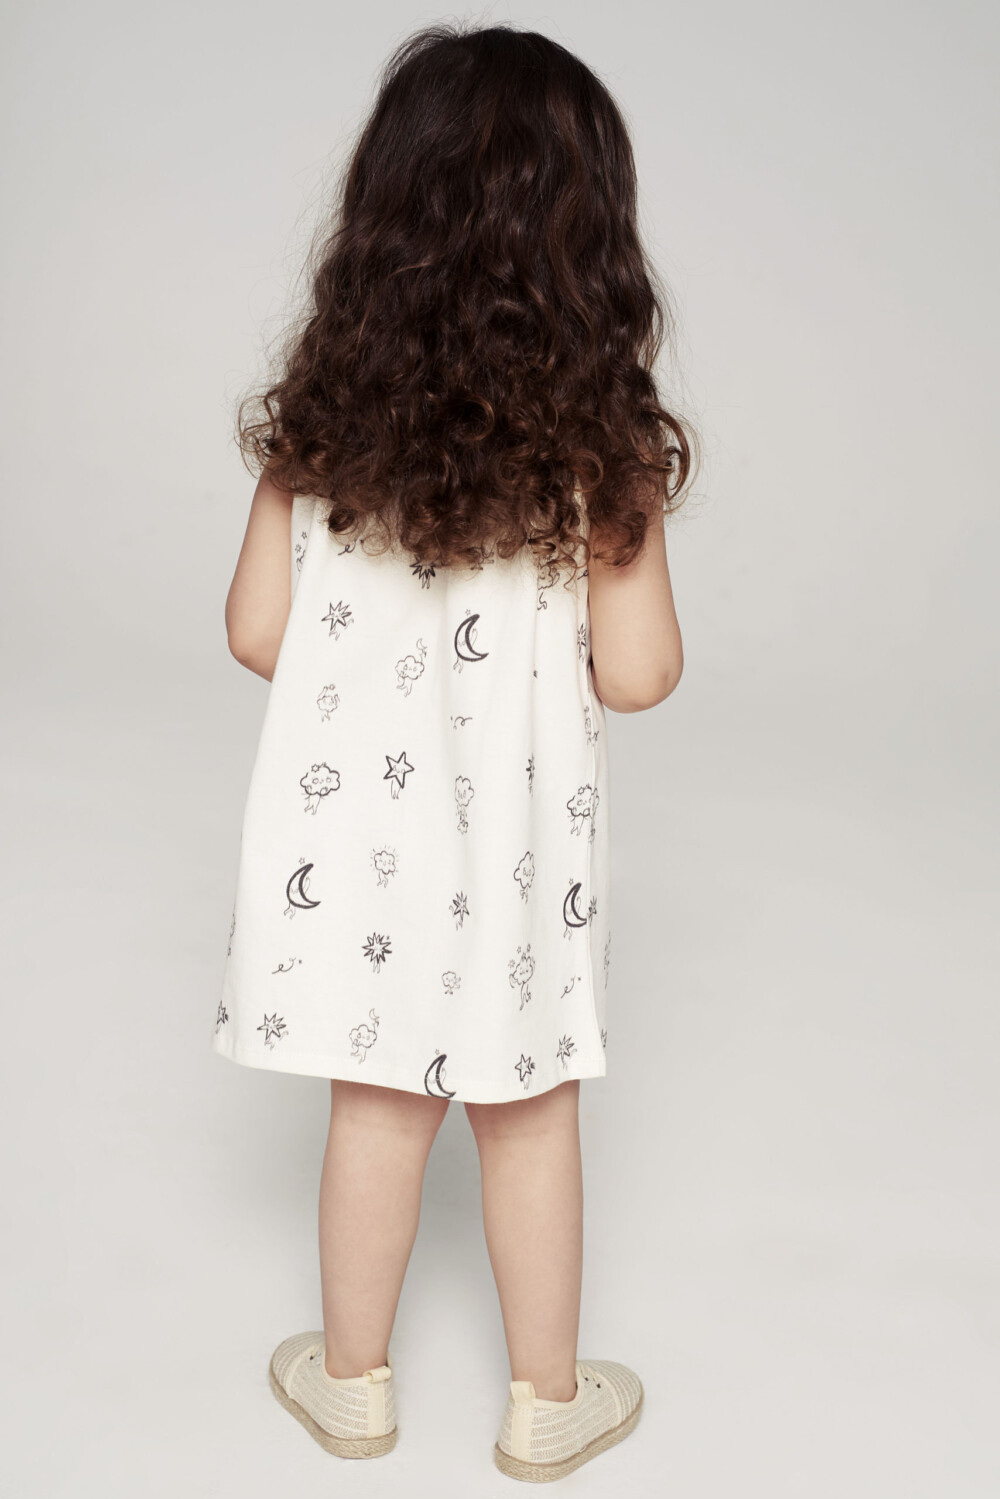 Sukienka dla dziecka na ramiaczkach kremowa Chmury tyl scaled 1